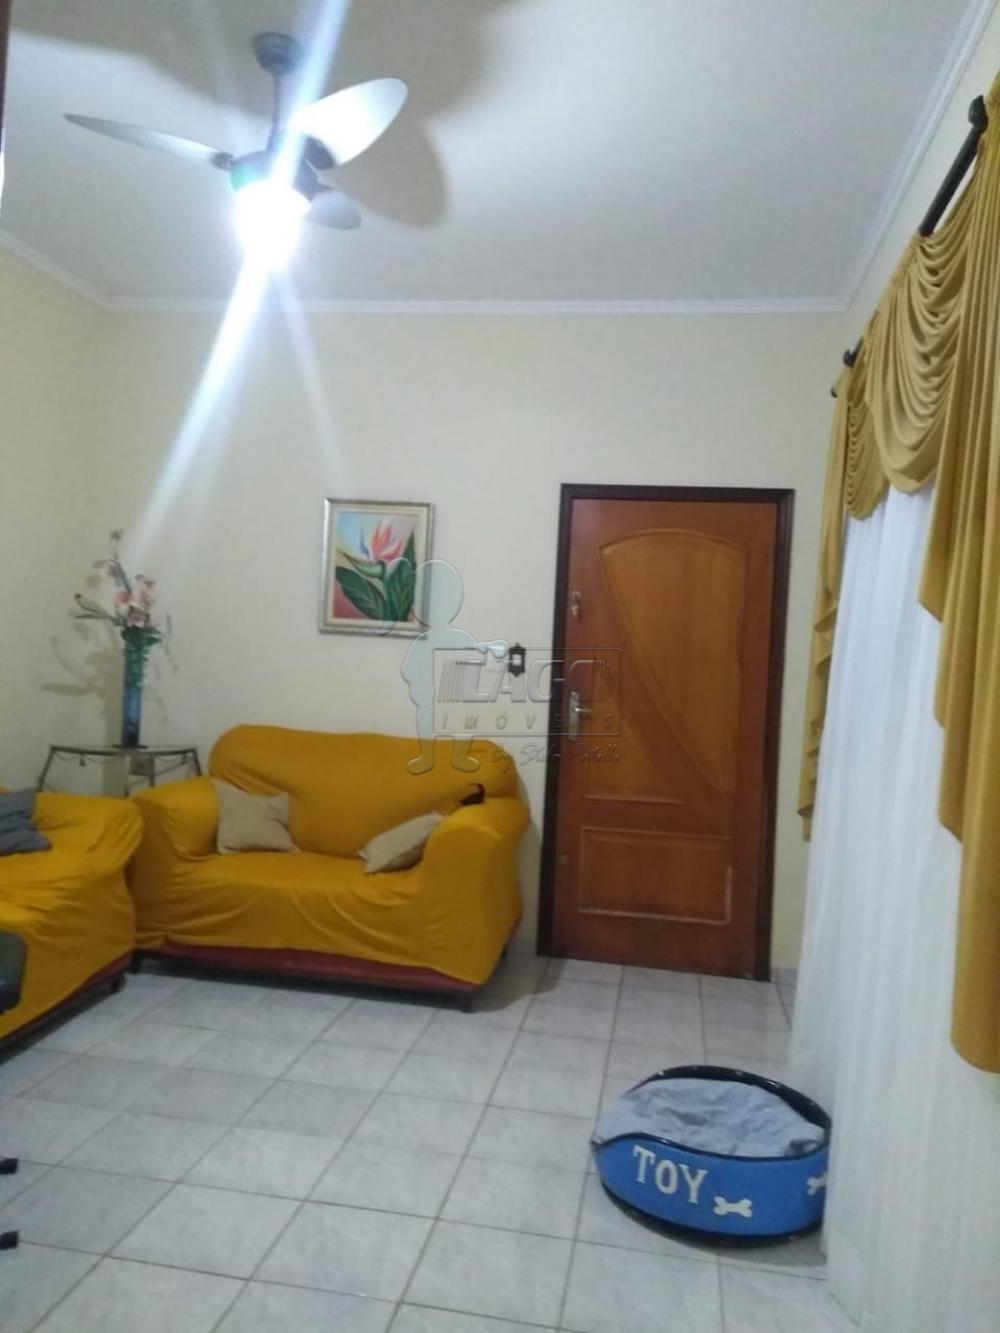 Alugar Casa / Padrão em Ribeirão Preto R$ 1.500,00 - Foto 4